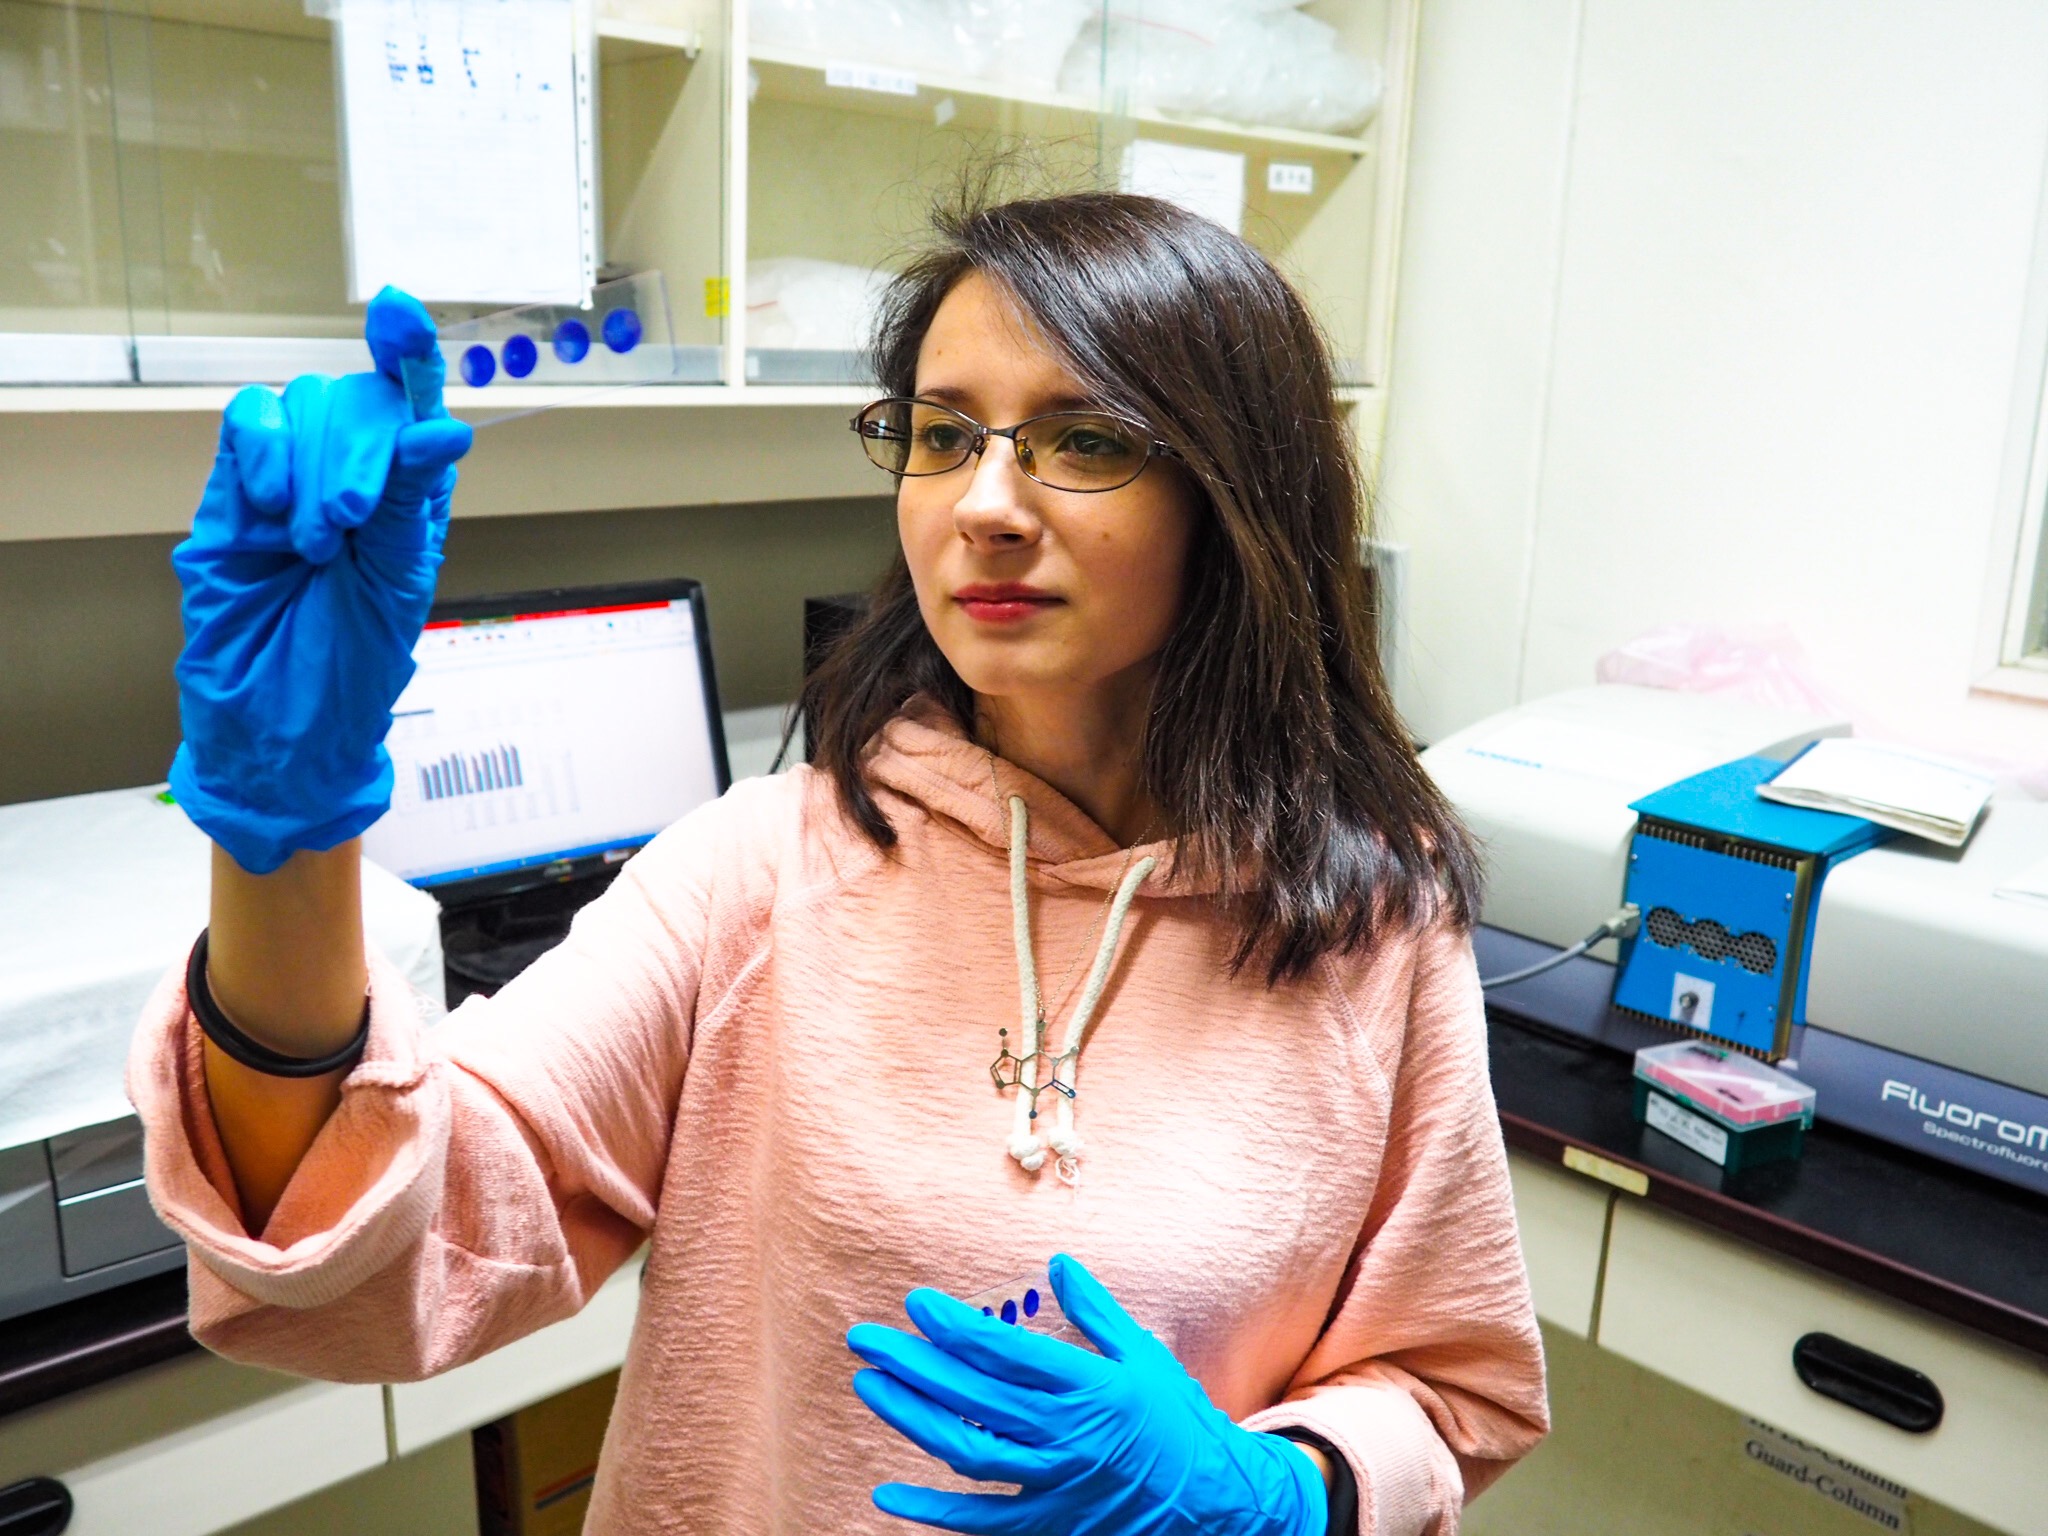 La ingeniera guatemalteca en Biomedicina Andrea Celeste del Valle, durante su labor investigativa en el laboratorio universitario, en Taiwán. (Foto Prensa Libre: cortesía Andrea Del Valle)